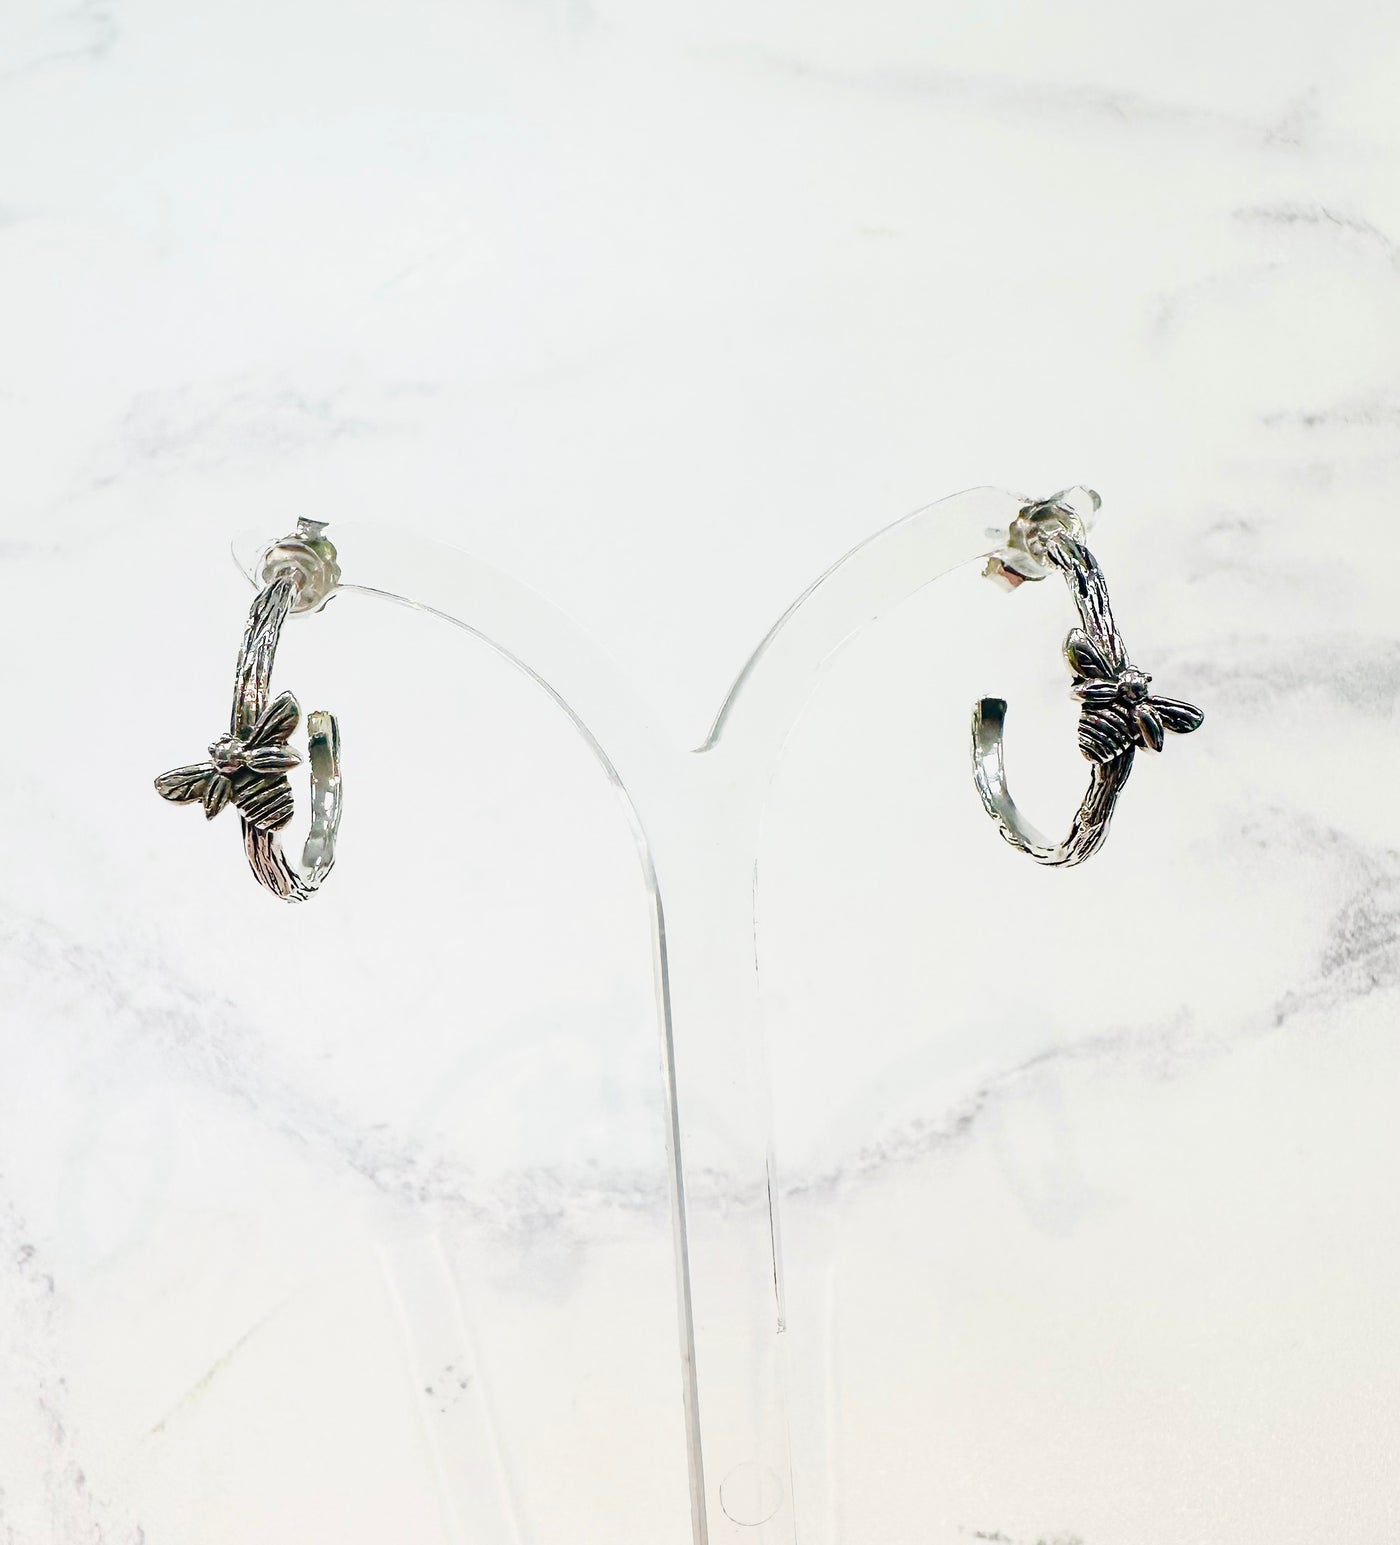 Kali Ma Decorative Bee Hoop Earrings - Sterling 925 Silver